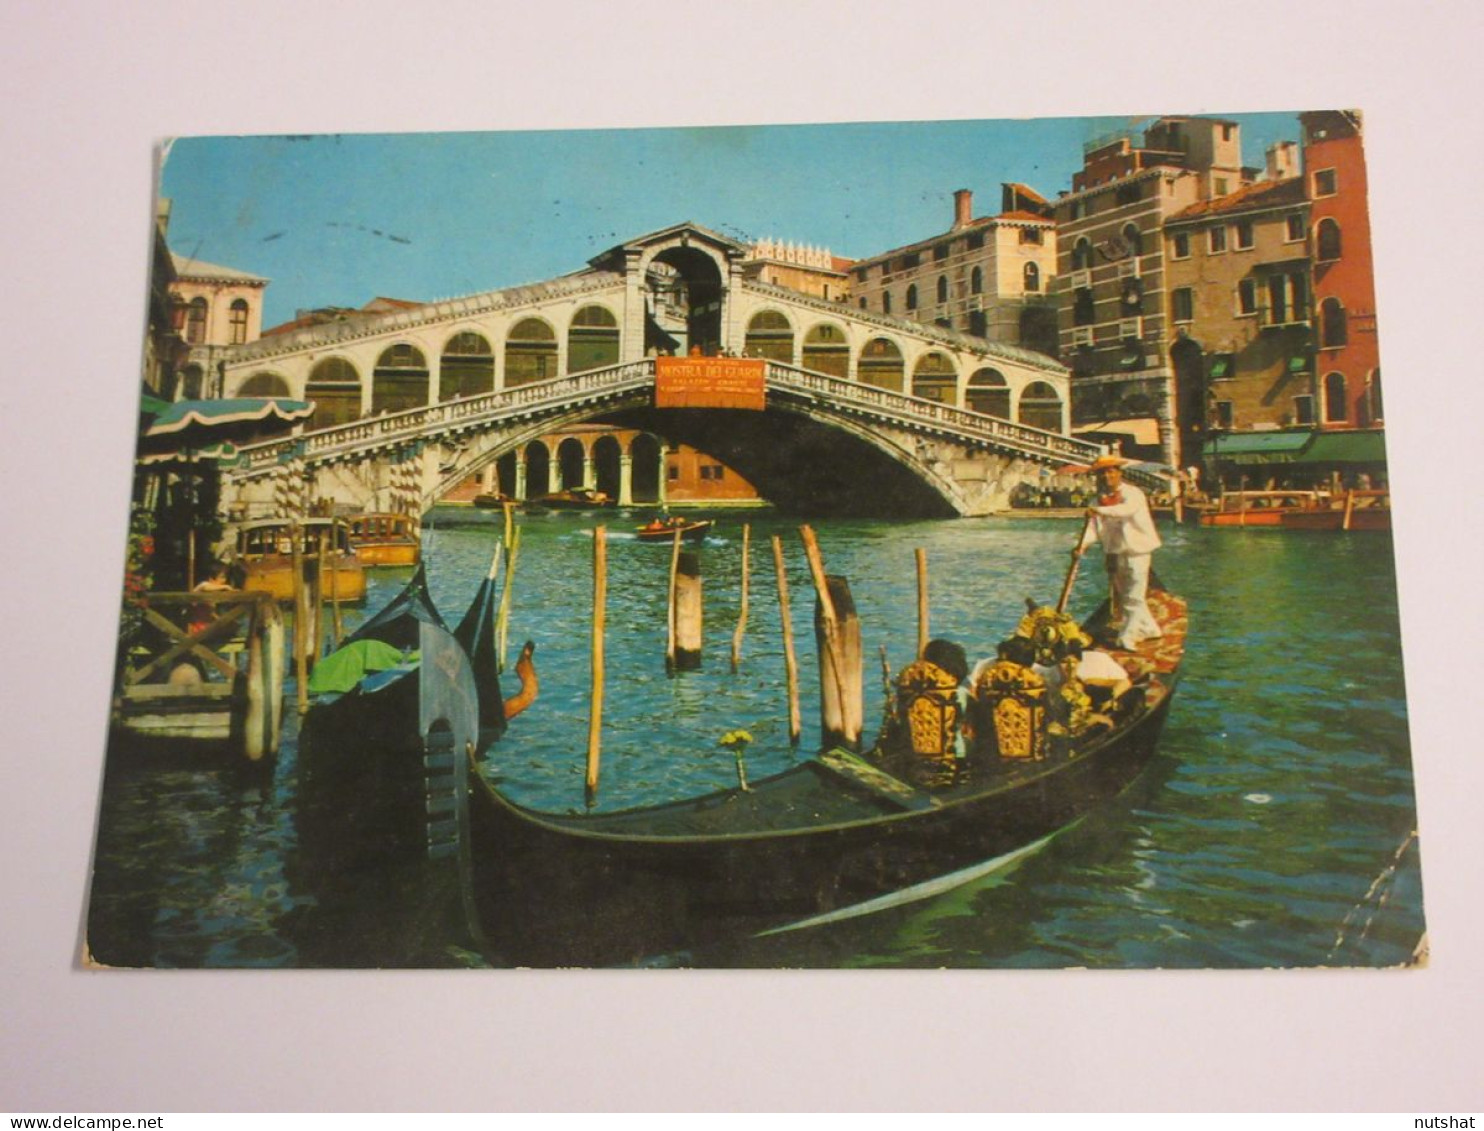 CP CARTE POSTALE ITALIE VENETIE VENISE PONT De RIALTO Avec GONDOLE- Ecrite - Venetië (Venice)